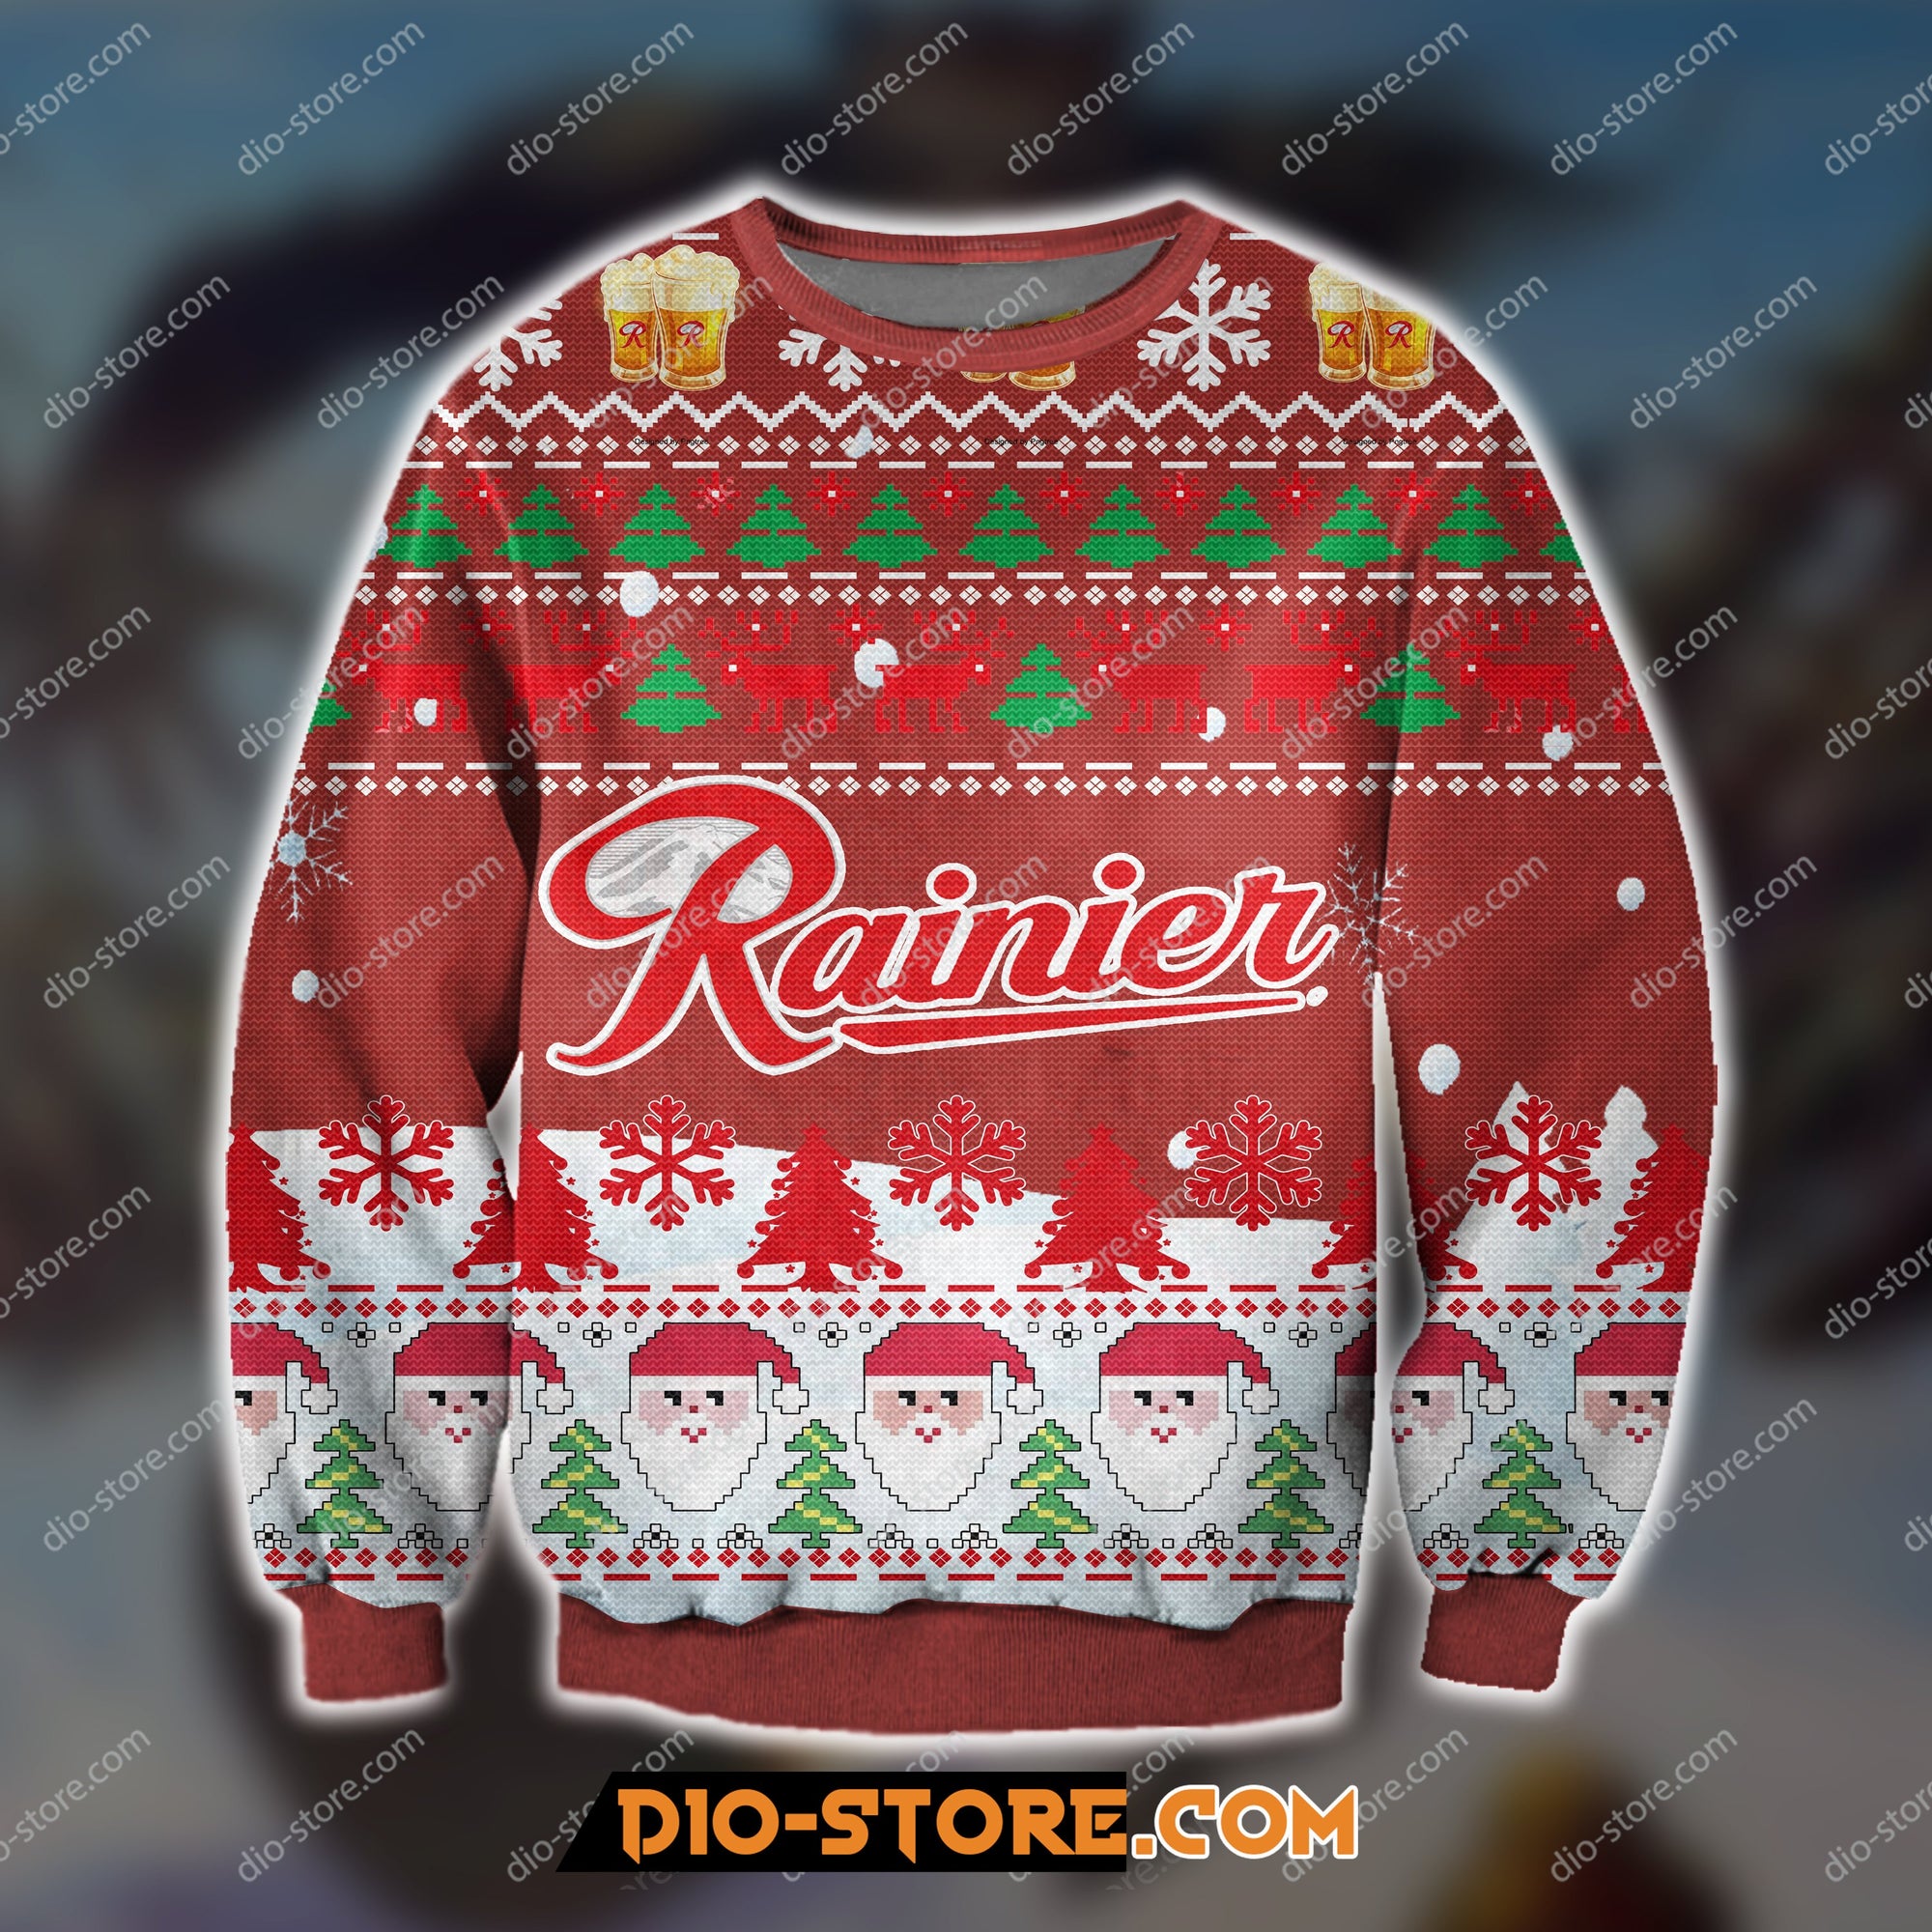 Rainier Beer Knitting Pattern 3D Print Ugly Sweatshirt Hoodie All Over Printed Cint10412